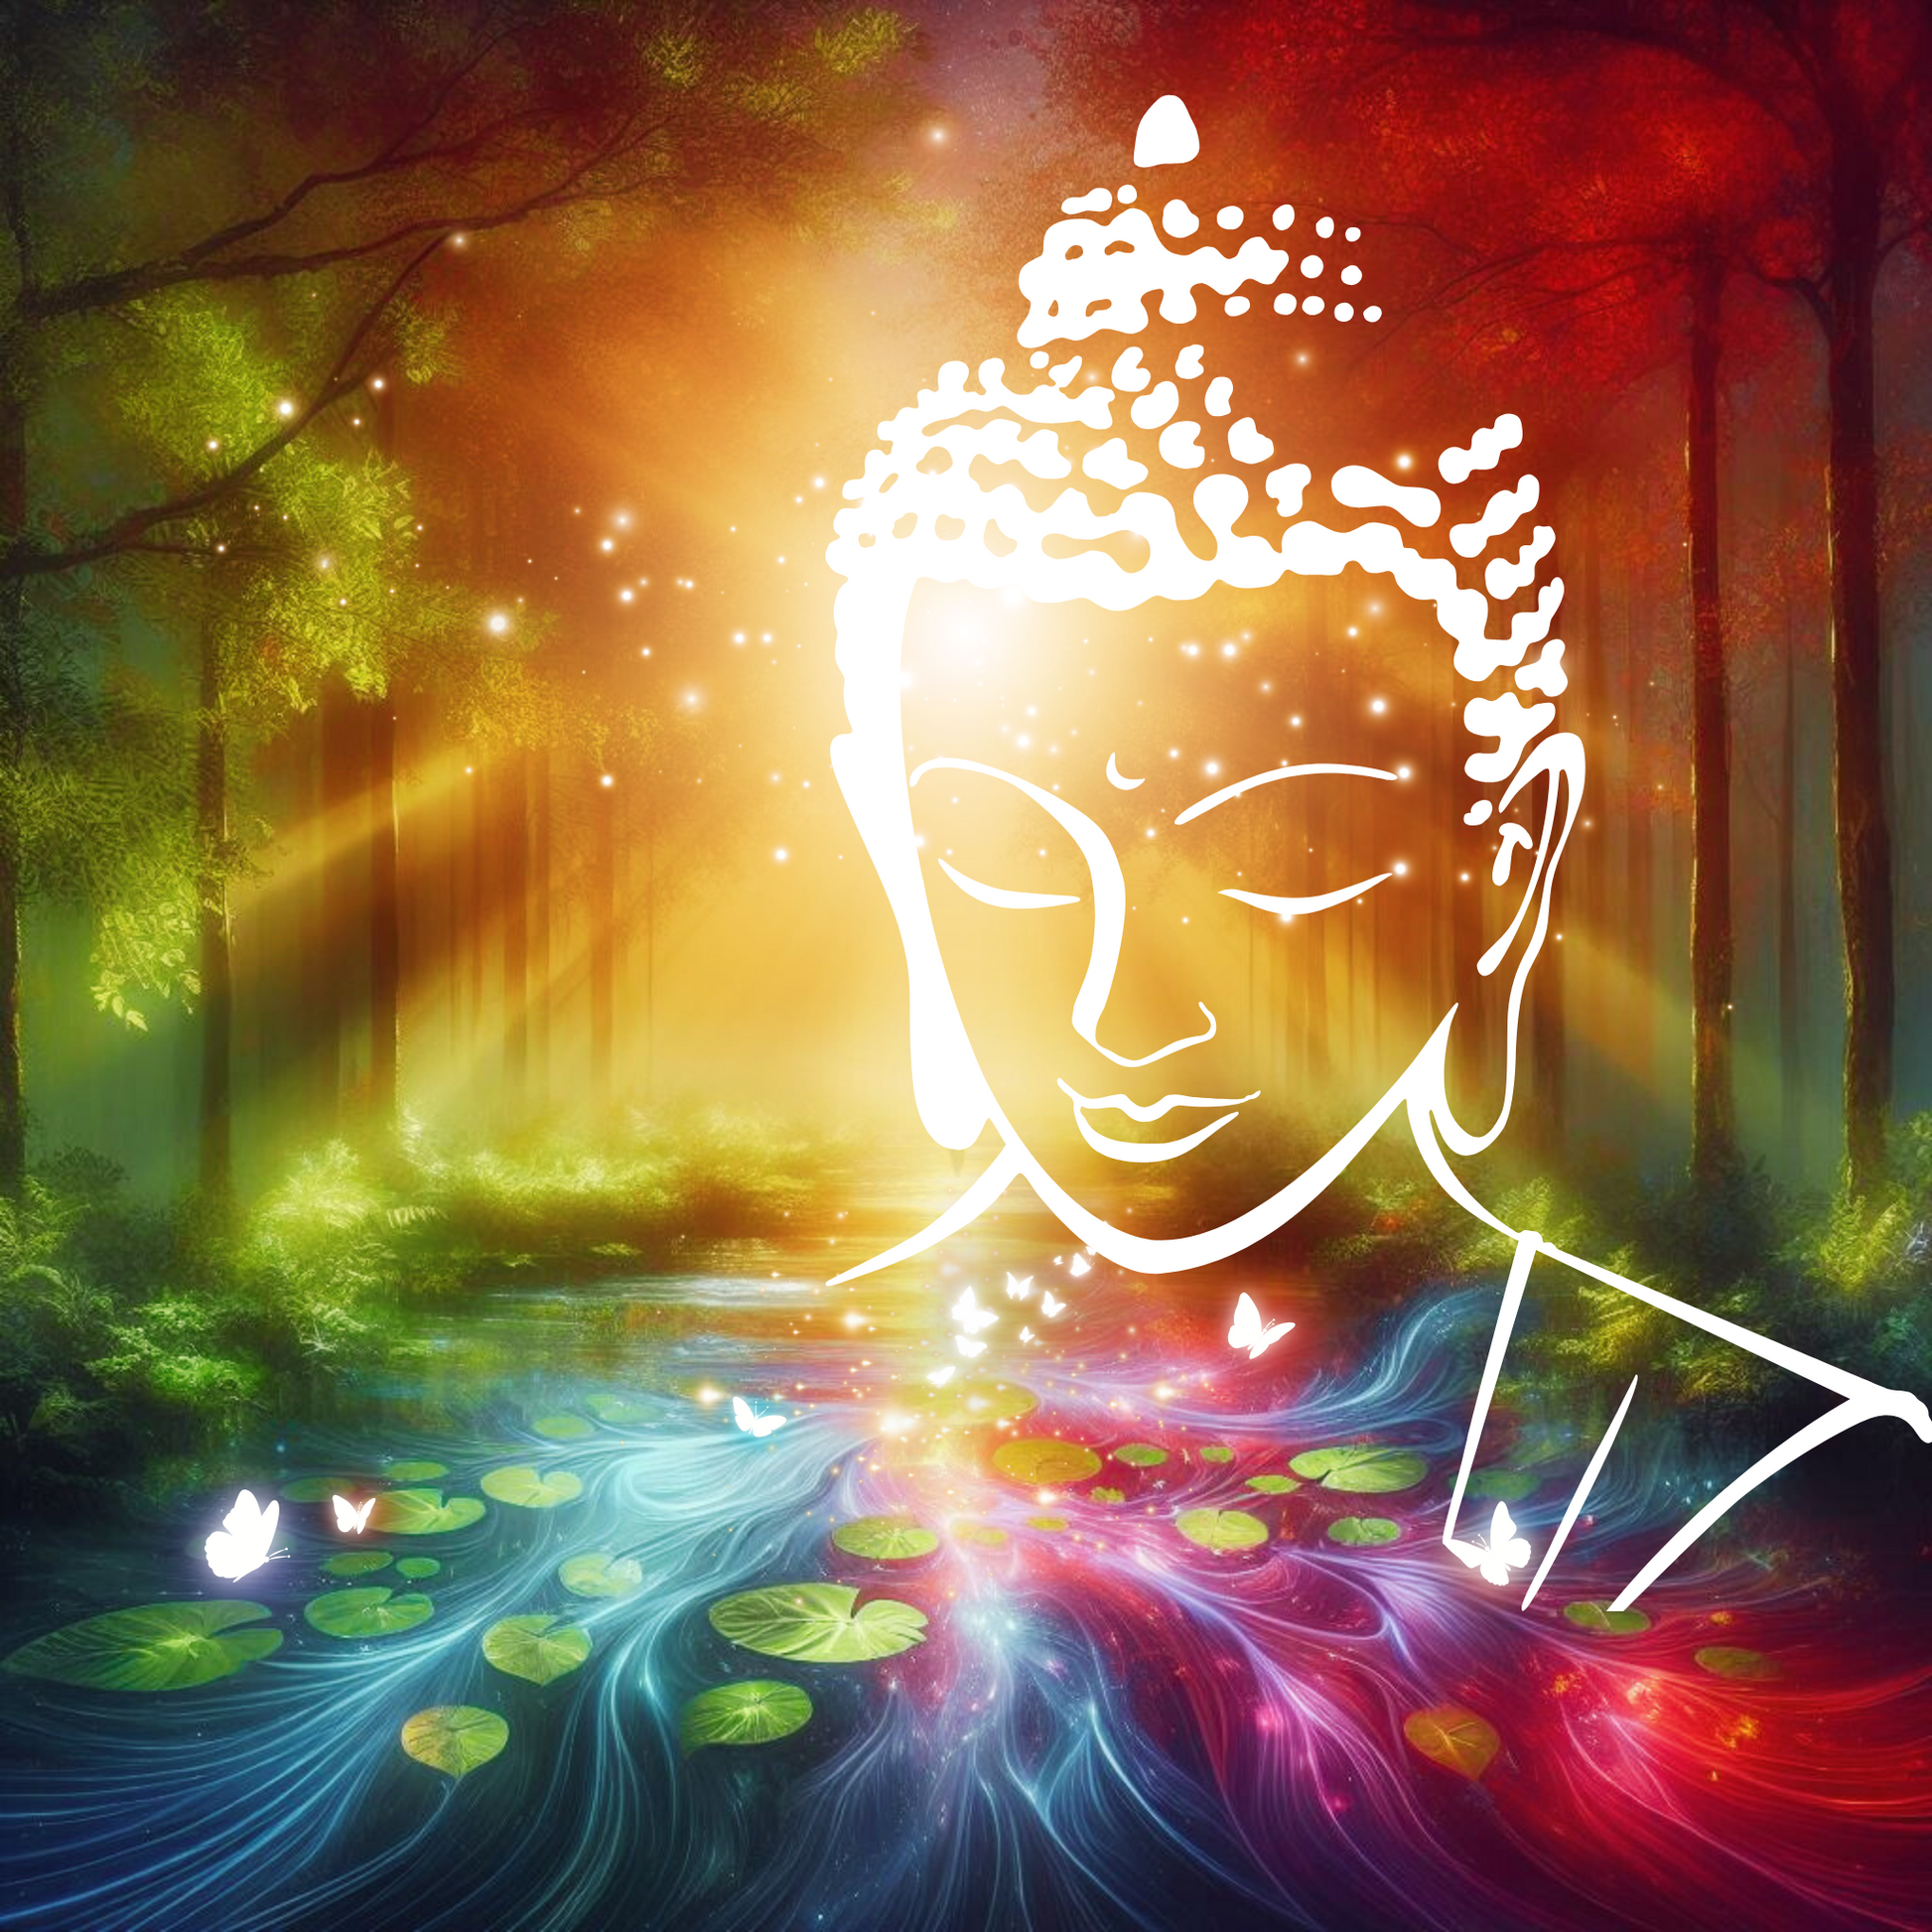 Buddha Kopf vor fließendem Gewässer das in Chakra Farben leuchtet. Ein Wald.